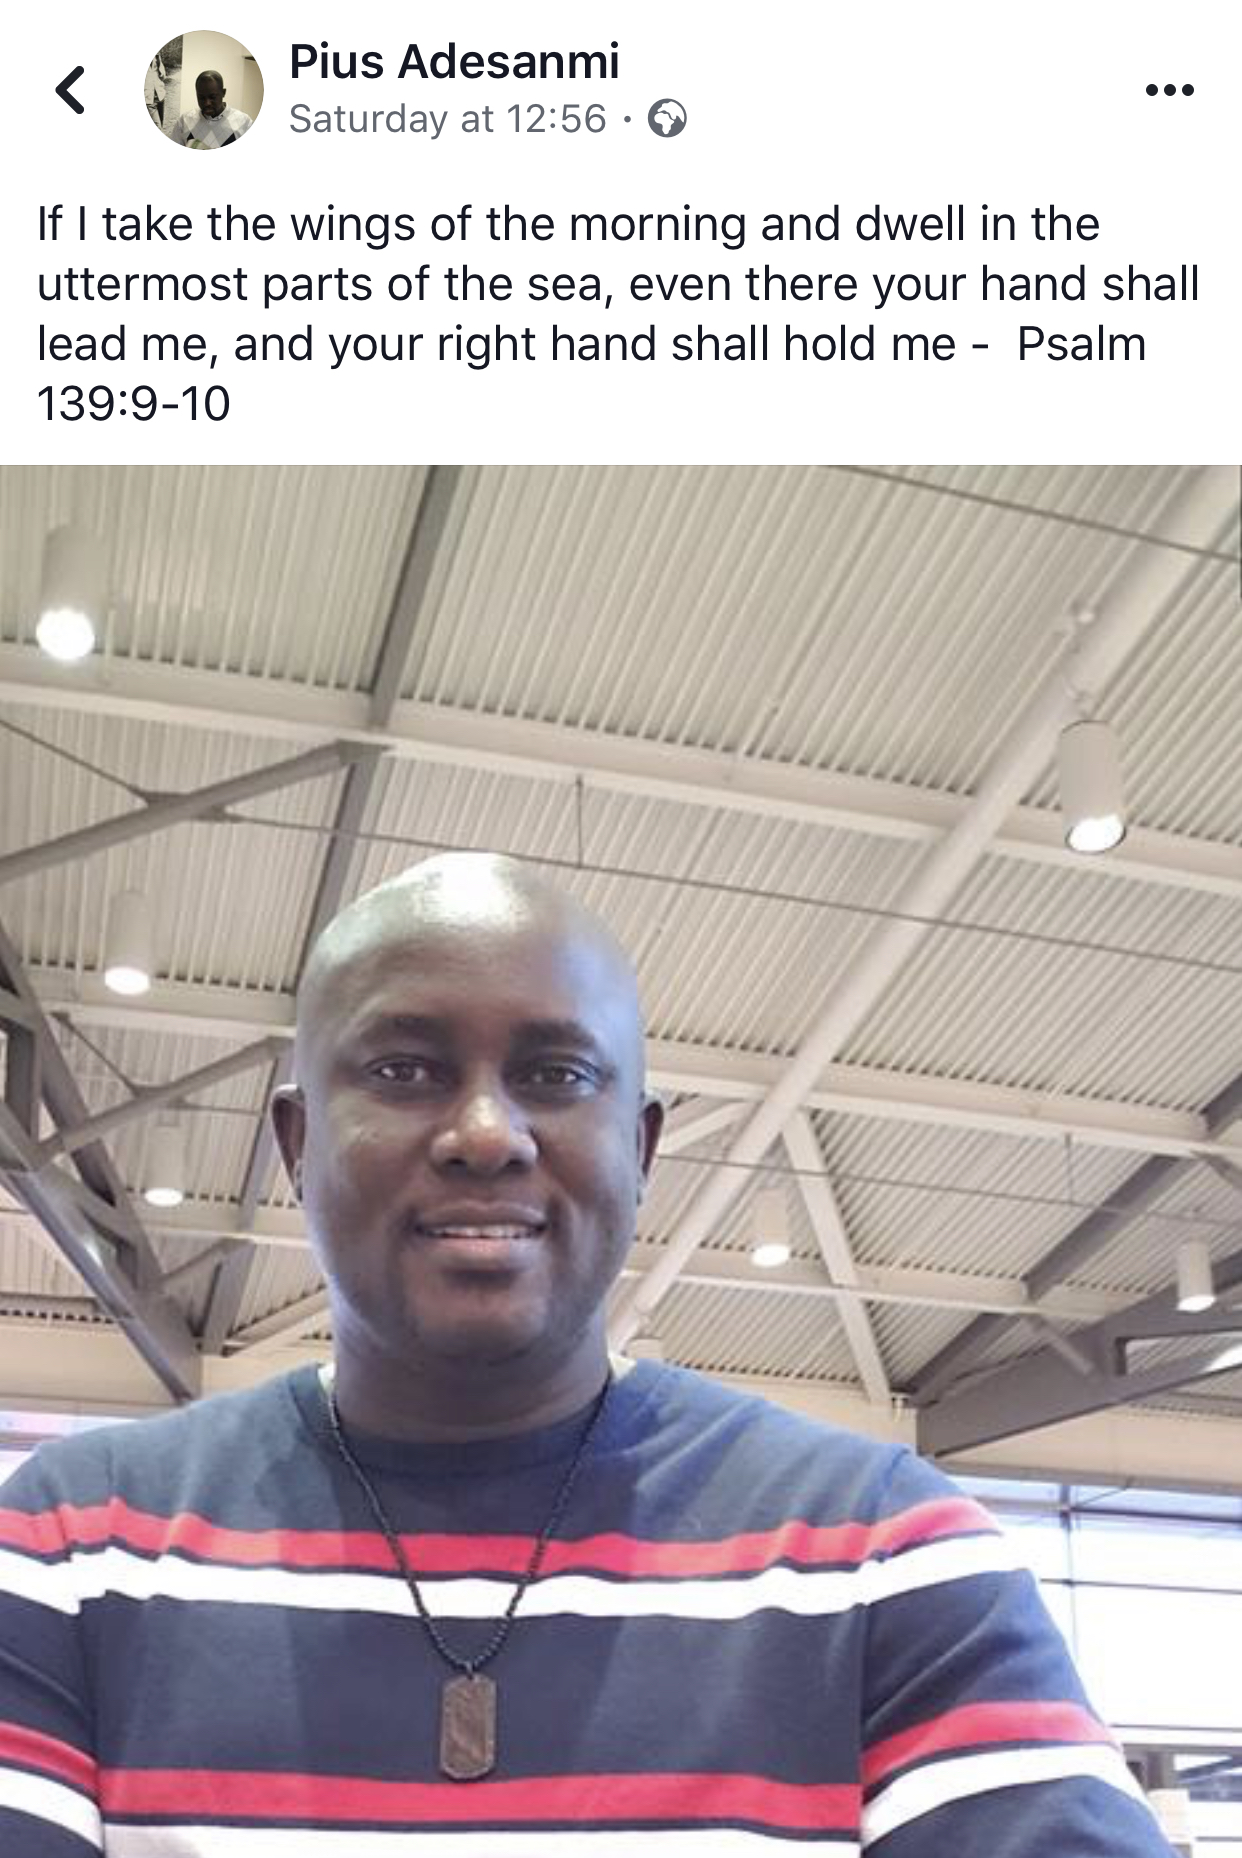 Pius Adesanmi/Facebook